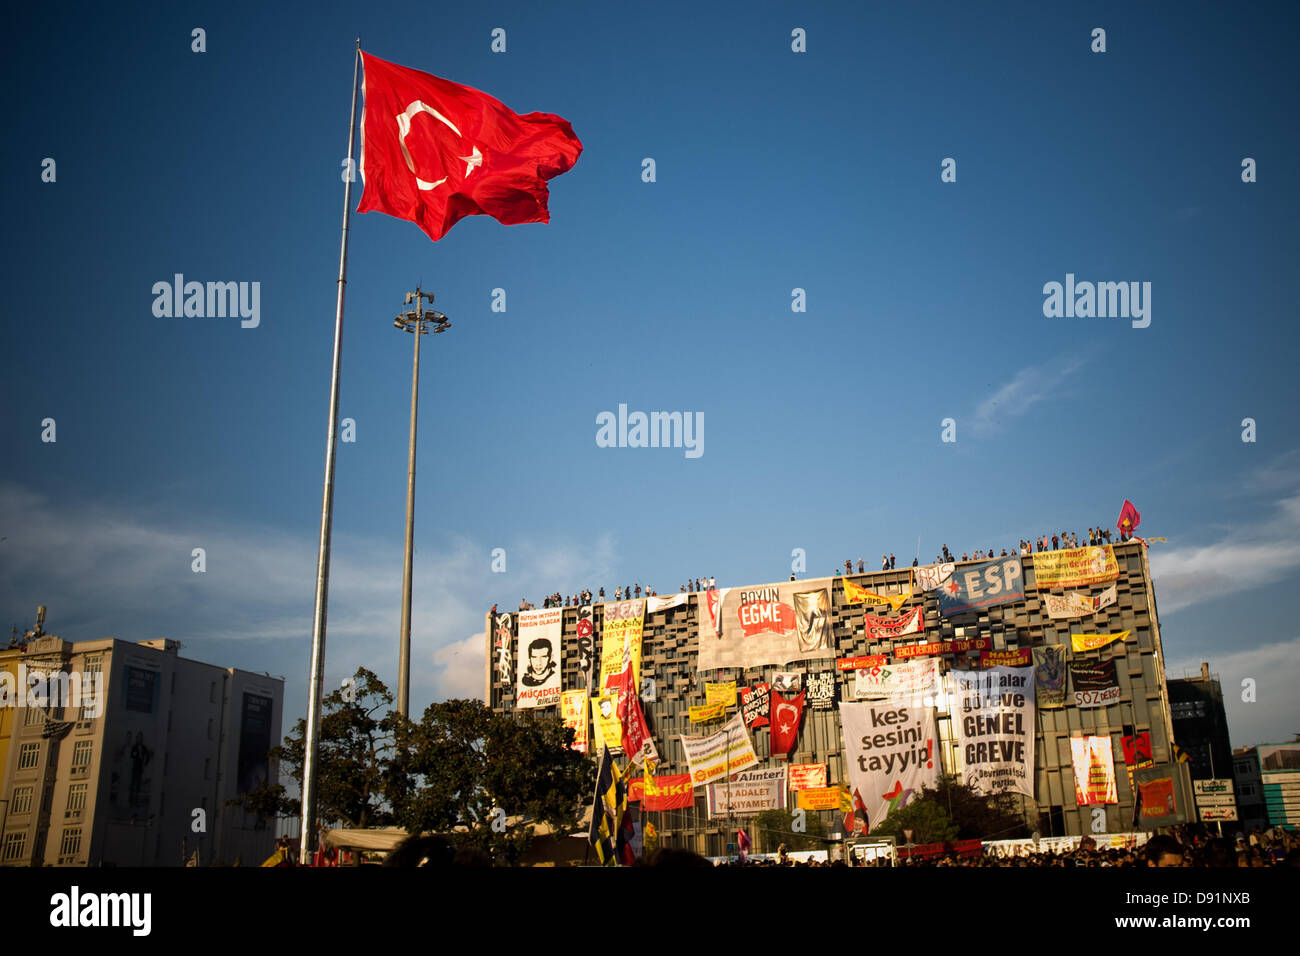 La Place Taksim, Istanbul, Turquie. 8 juin, 2013. Un immense drapeau turc vole à côté du bâtiment Centre Culturel Ataturk, occupés par des manifestants depuis le début des manifestations. Un autre jour les habitants d'Istanbul au crépuscule aller vers la Place Taksim à manifester leur protestation contre le gouvernement de M. Erdogan. Crédit : Jordi Boixareu/Alamy Live News Banque D'Images